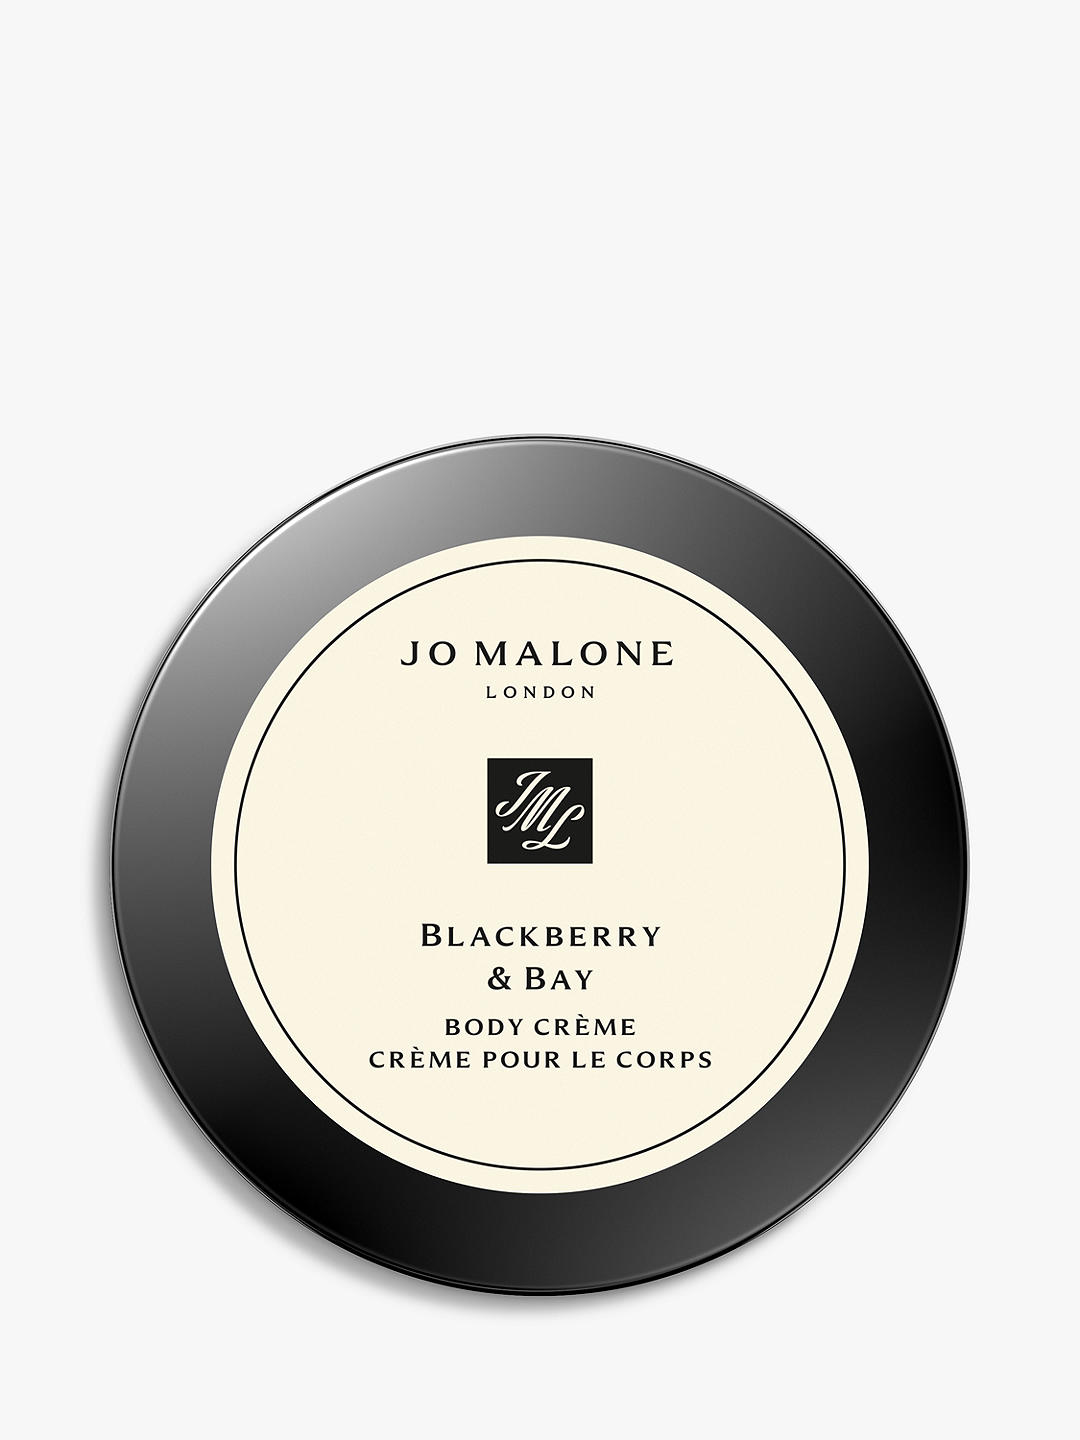 Jo Malone London Blackberry & Bay Body Crème, 50ml 1